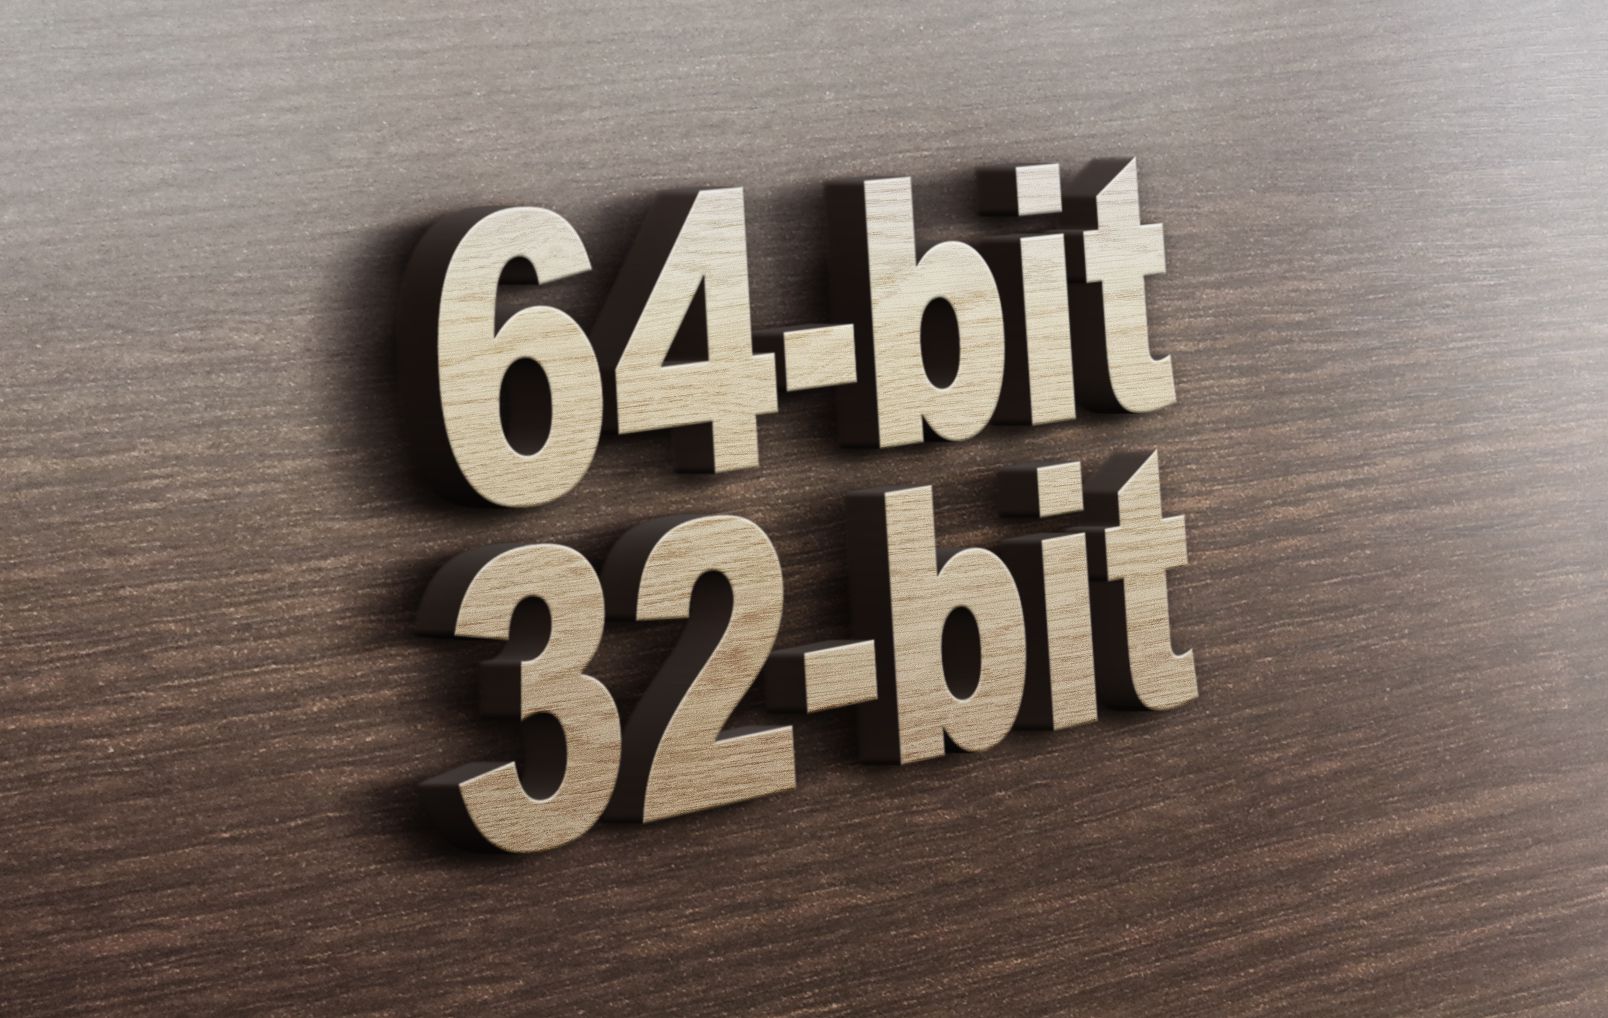 64-bit-vs-32-bit-56a6fa1a3df78cf772913c5f.jpg